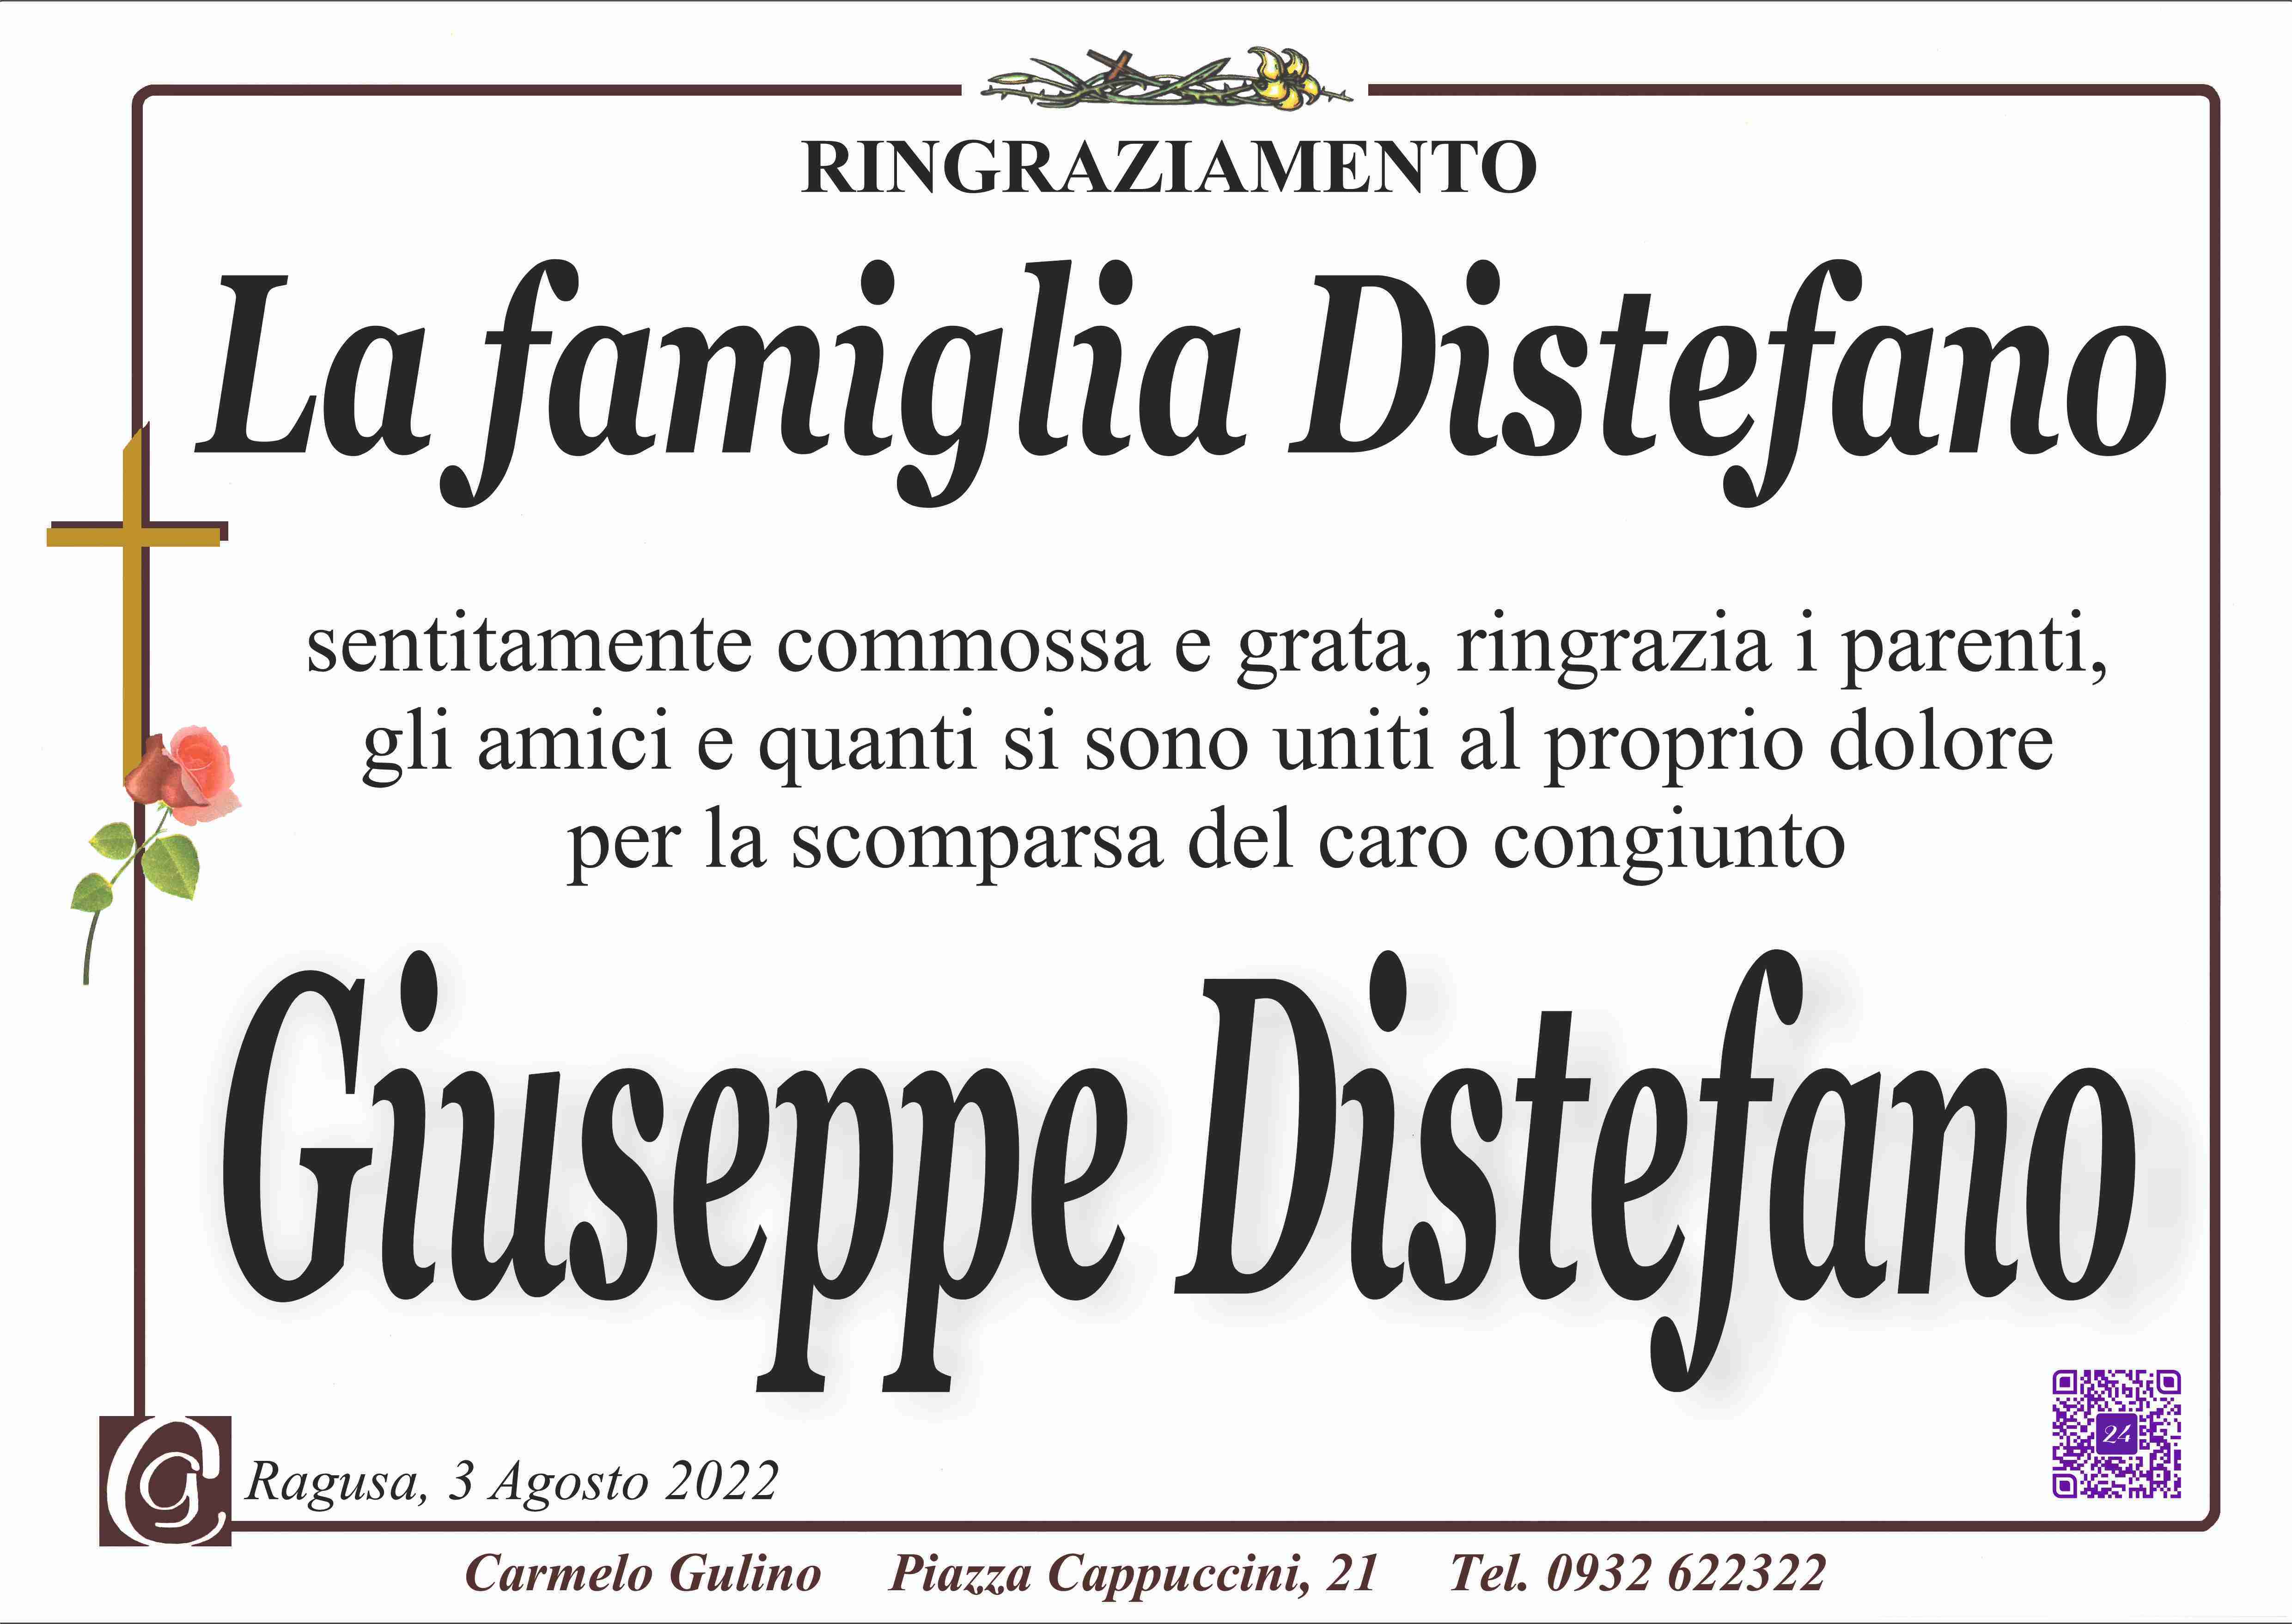 Giuseppe Distefano